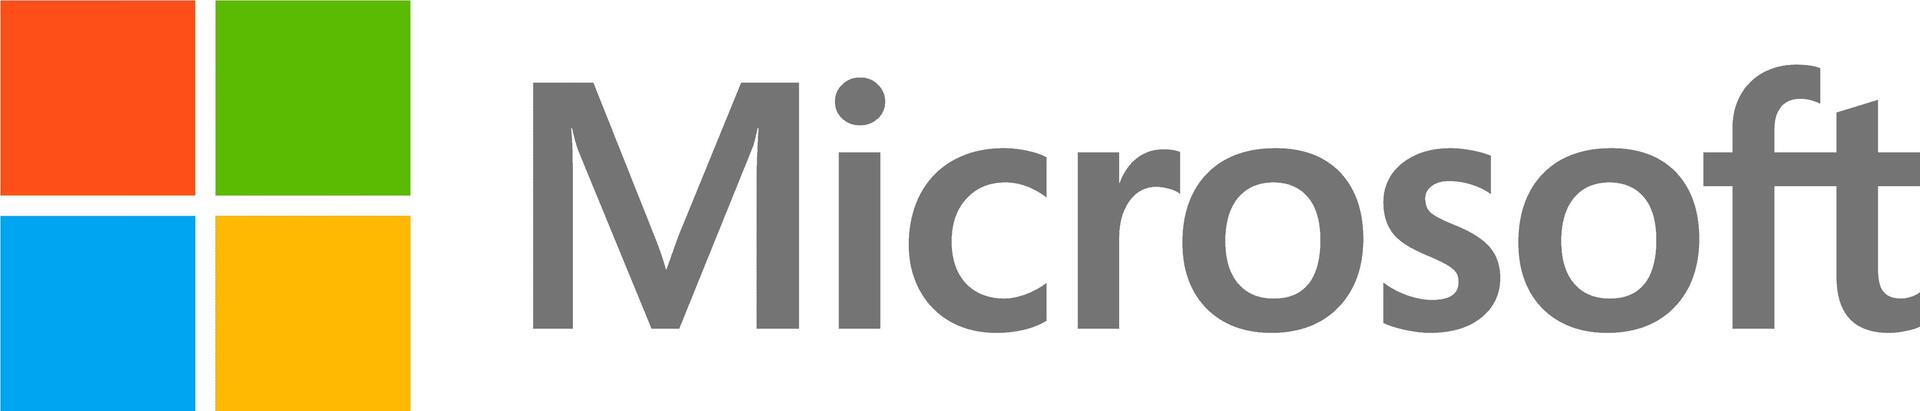 Microsoft DG7GMGF0D7CZ.0002 Software-Lizenz/-Upgrade 1 Lizenz(en) (DG7GMGF0D7CZ.0002)